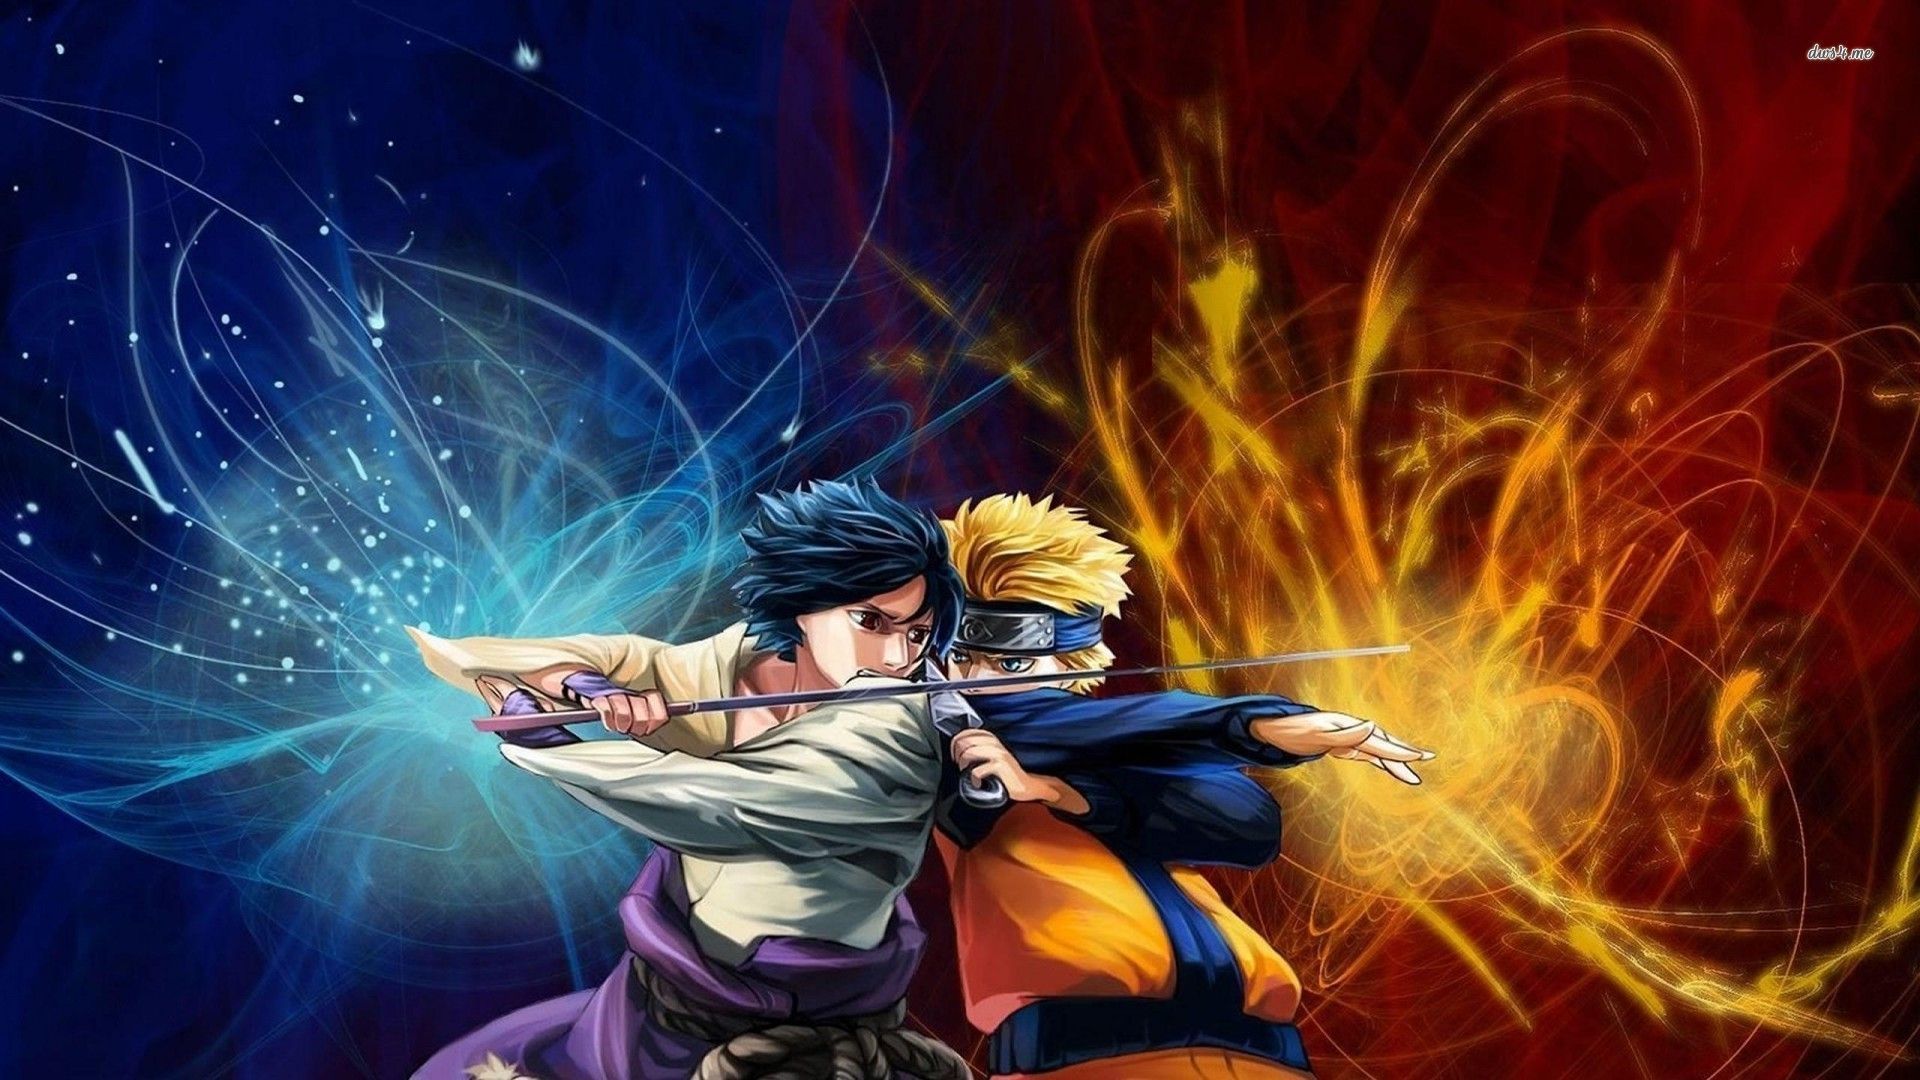 Naruto Shippuden vs. Sasuke Uchiha wallpaper - Anime wallpapers ...